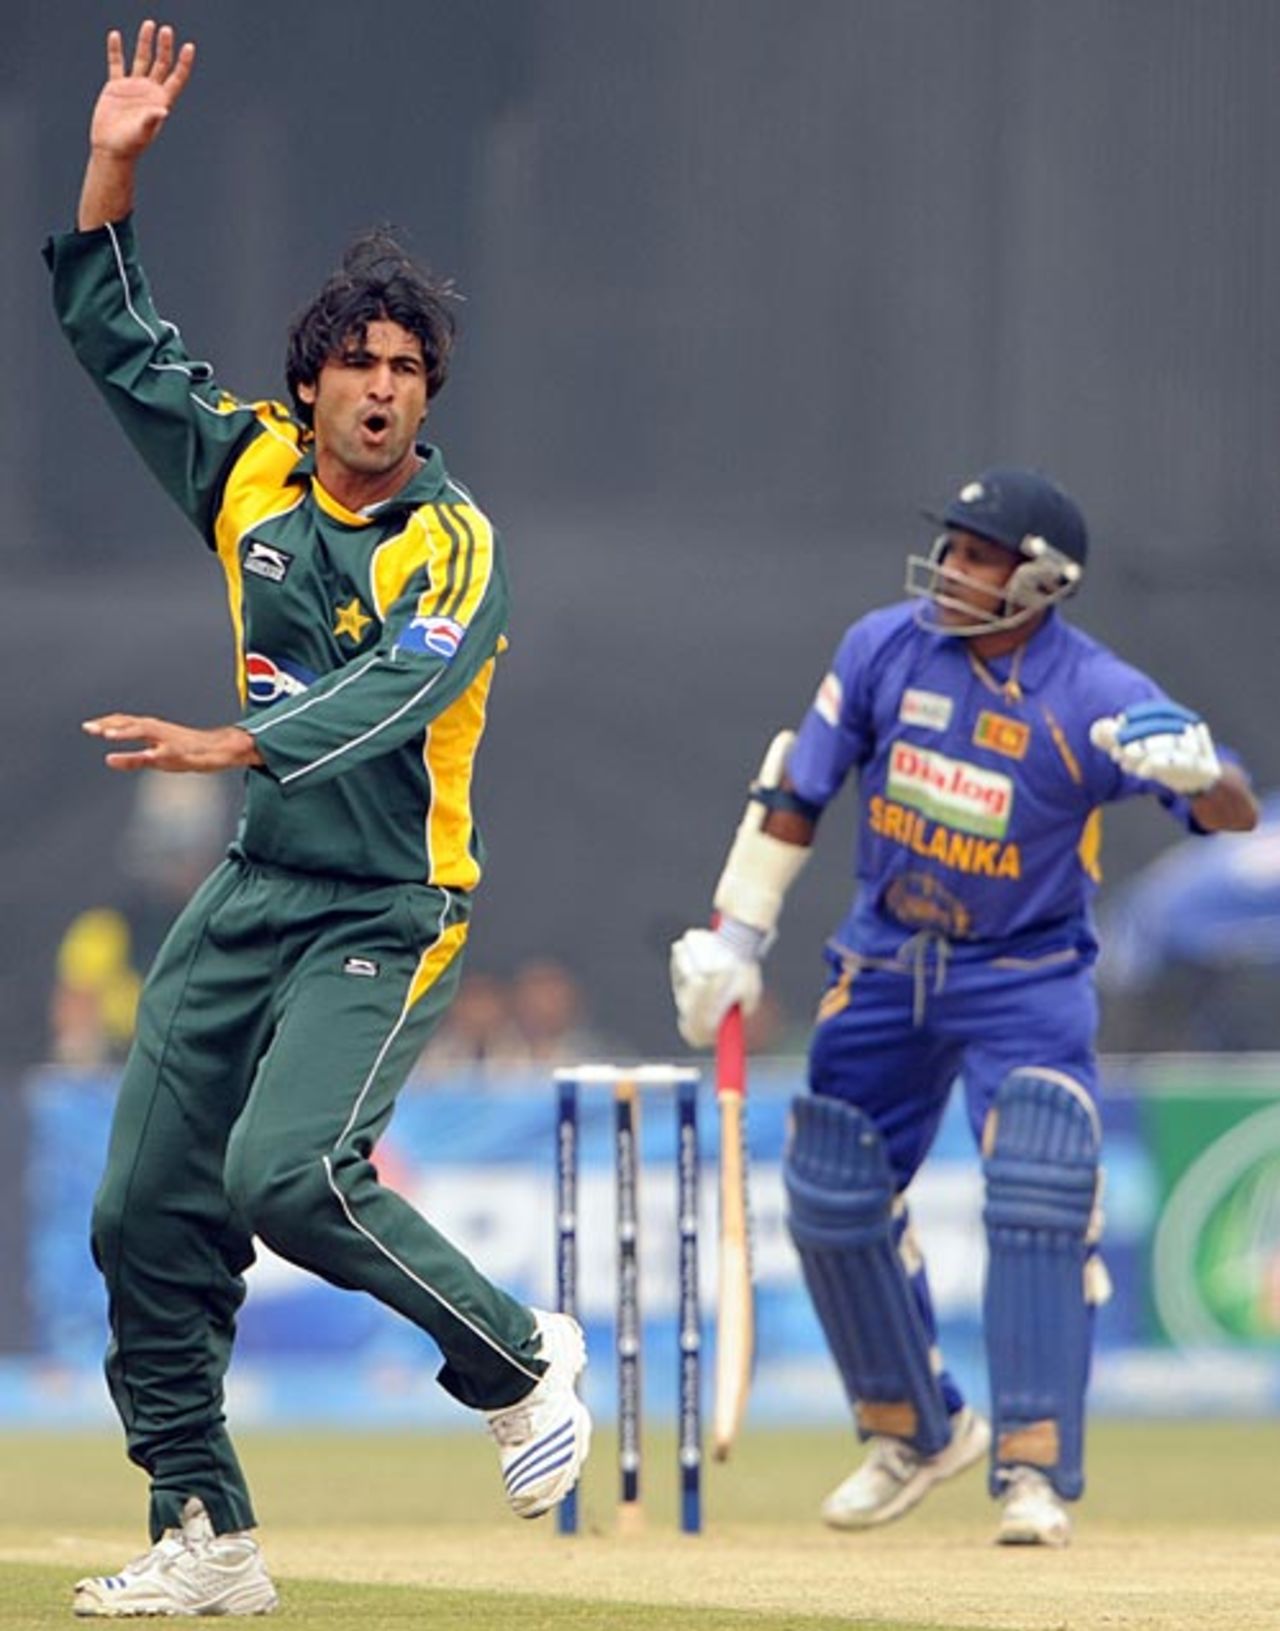 Sohail Khan appeals against Sanath Jayasuriya, Pakistan v Sri Lanka, 3rd ODI, Lahore, January 24, 2009